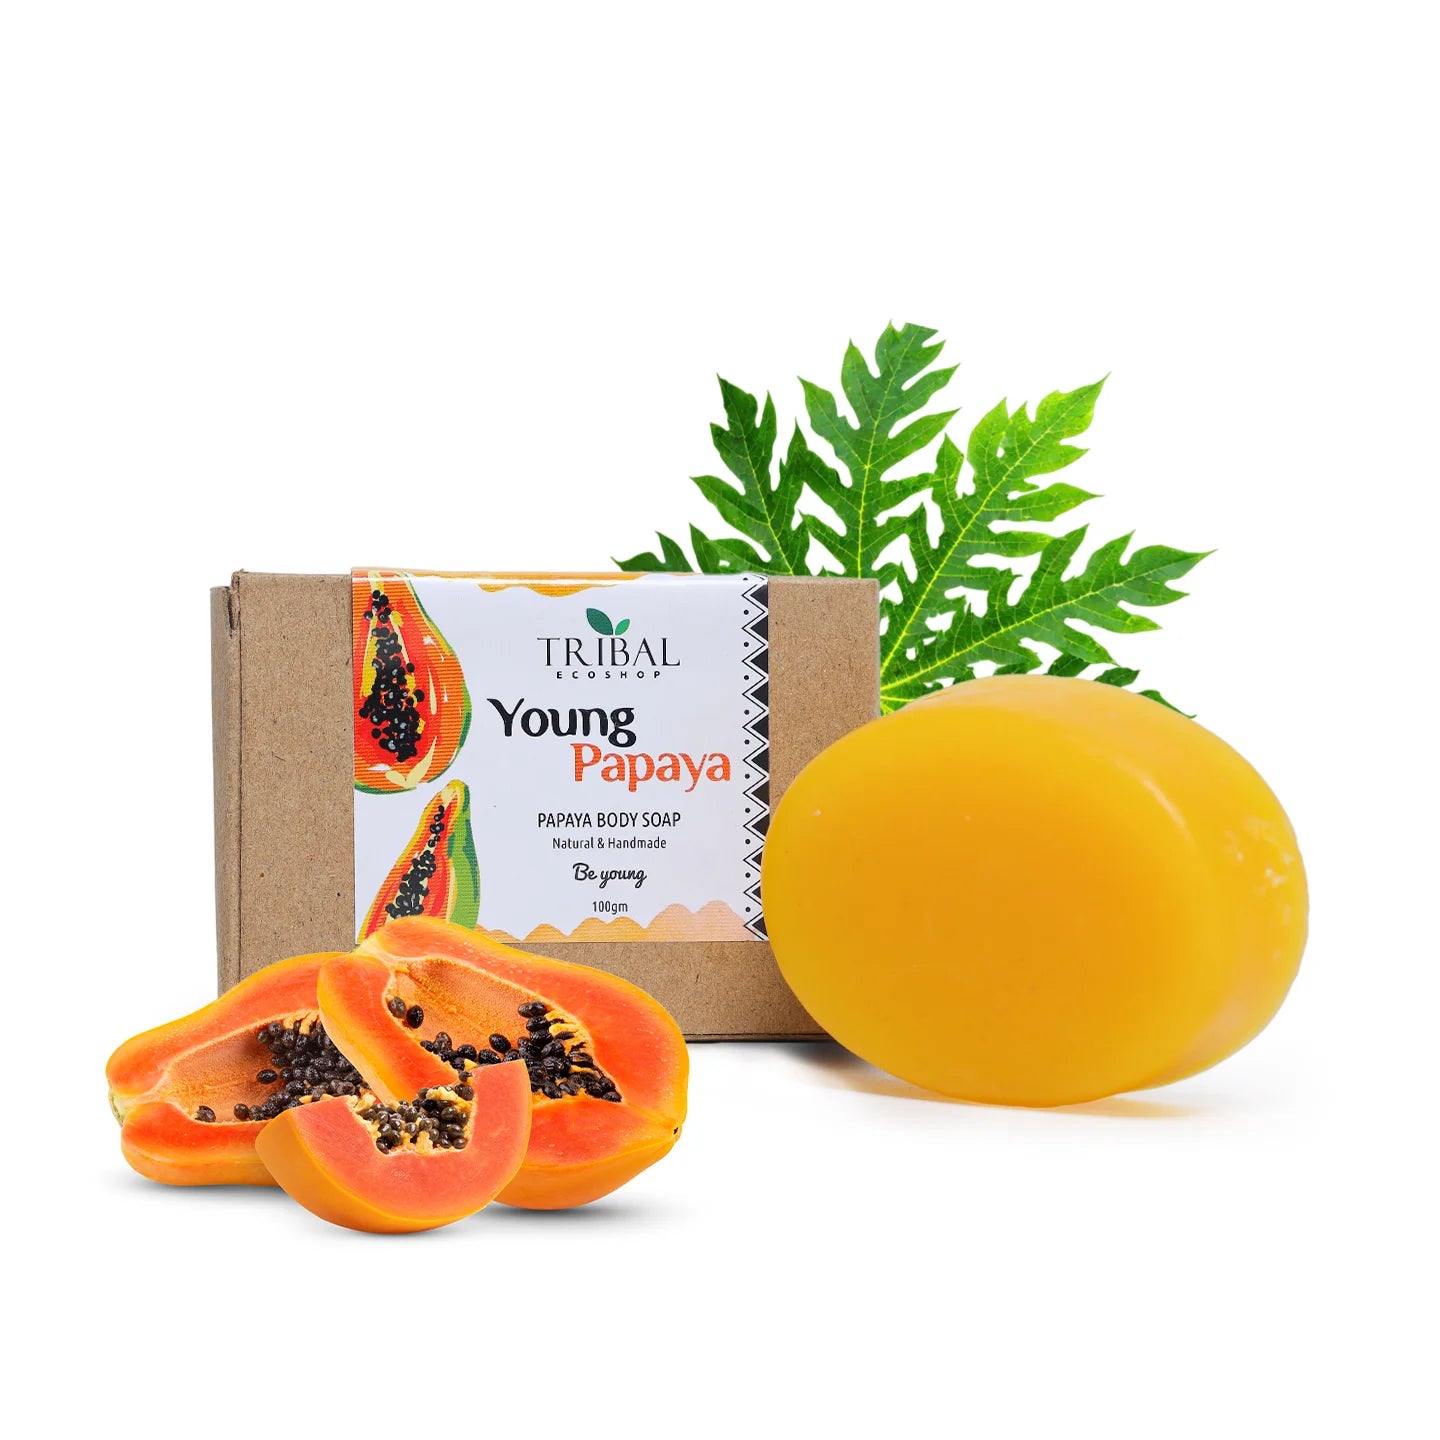 Young Papaya (Papaya Body Soap) 100g